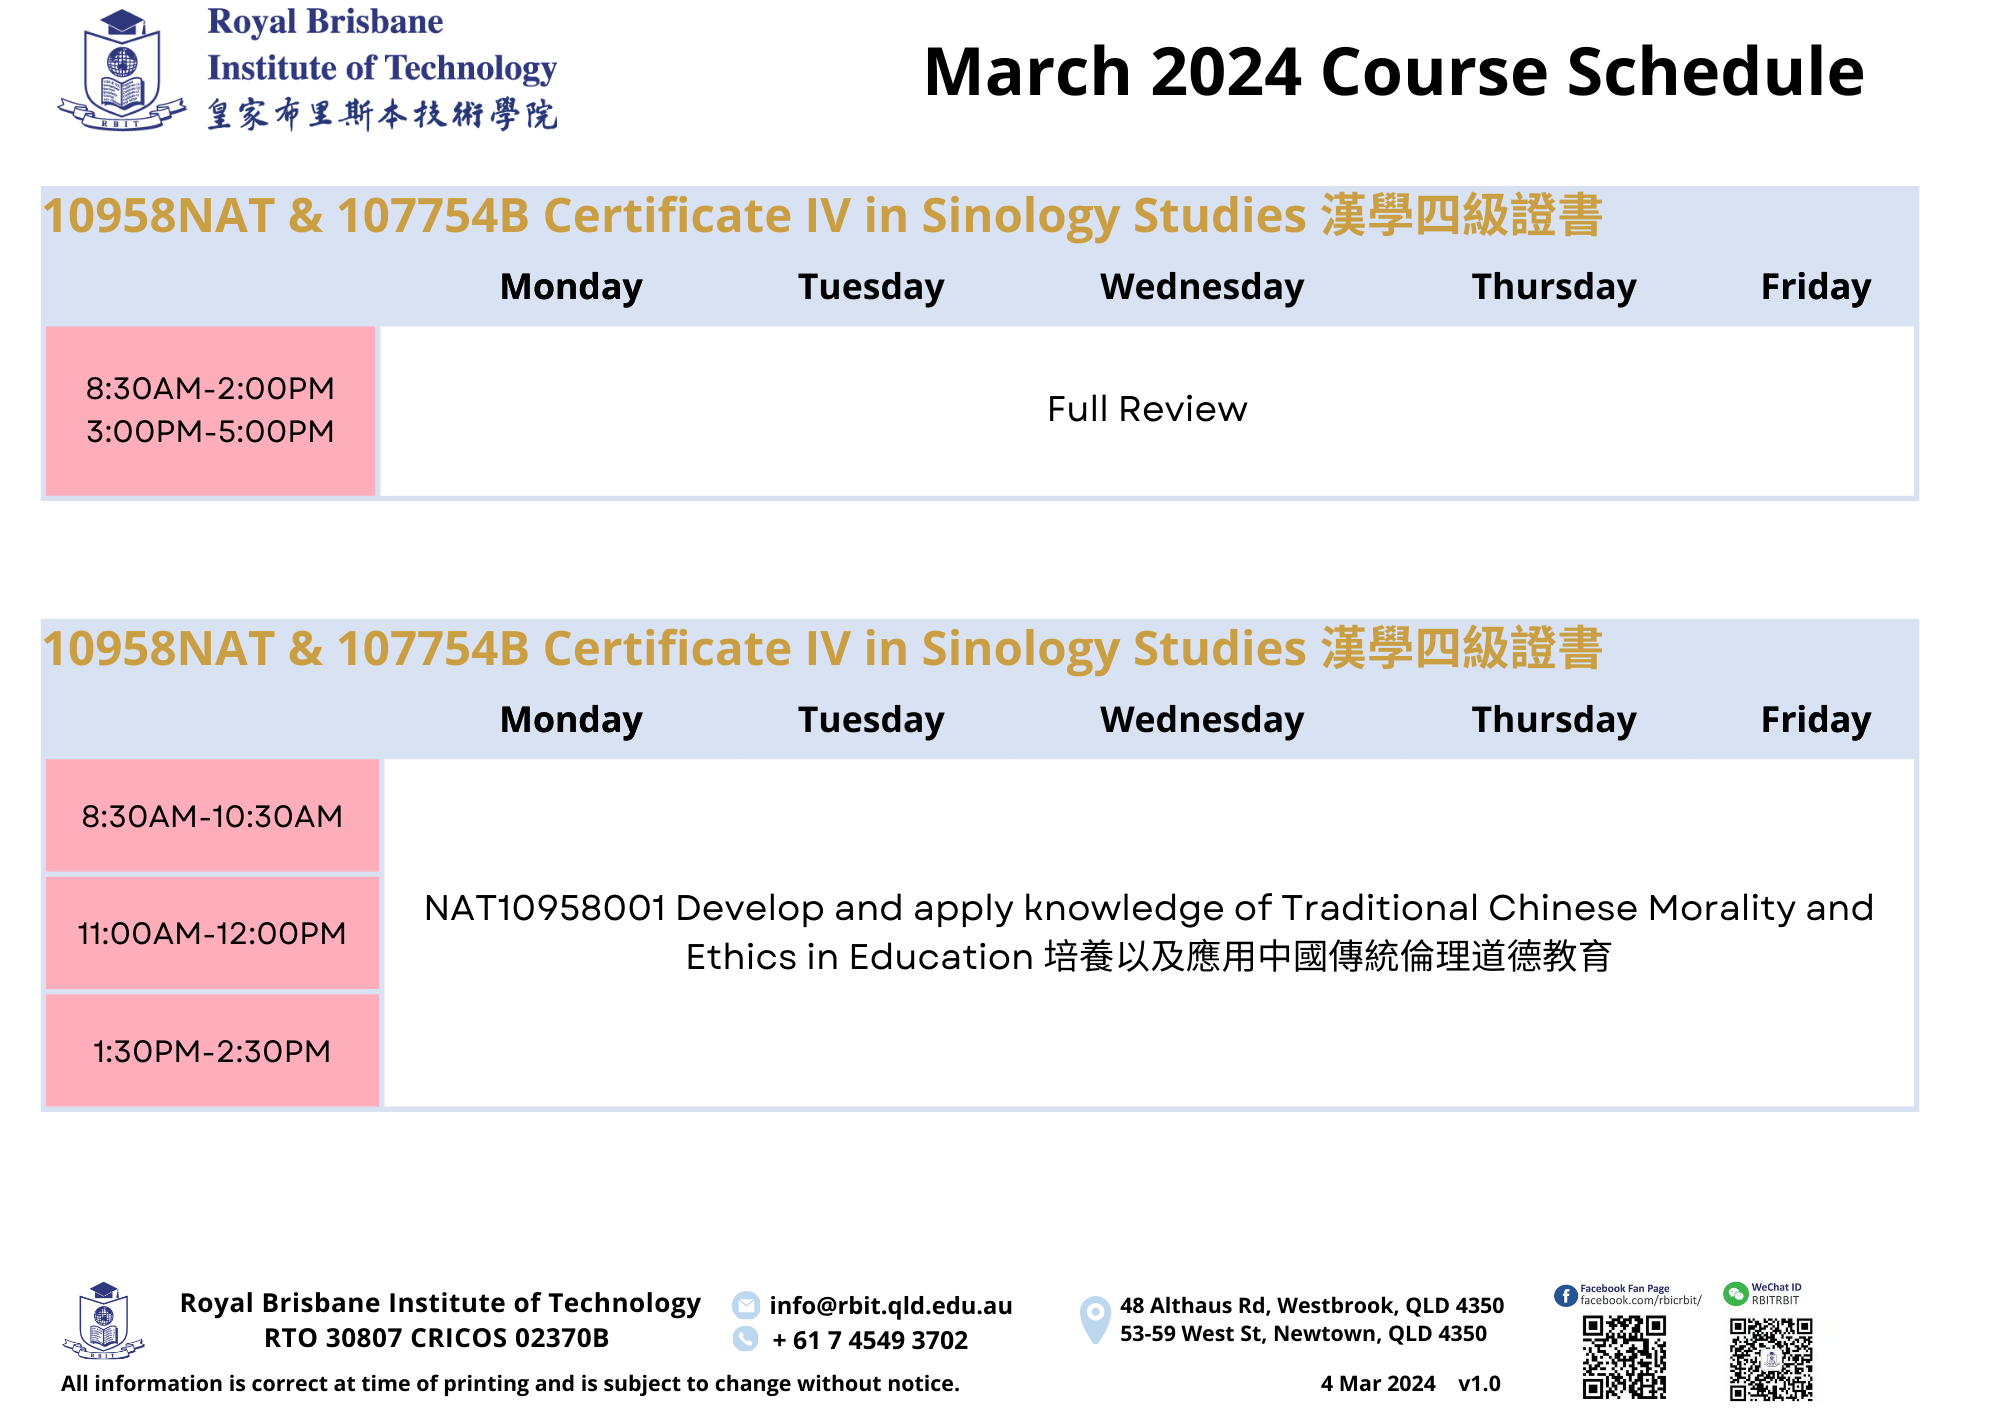 AL0_202403 Course Schedule_v1.0